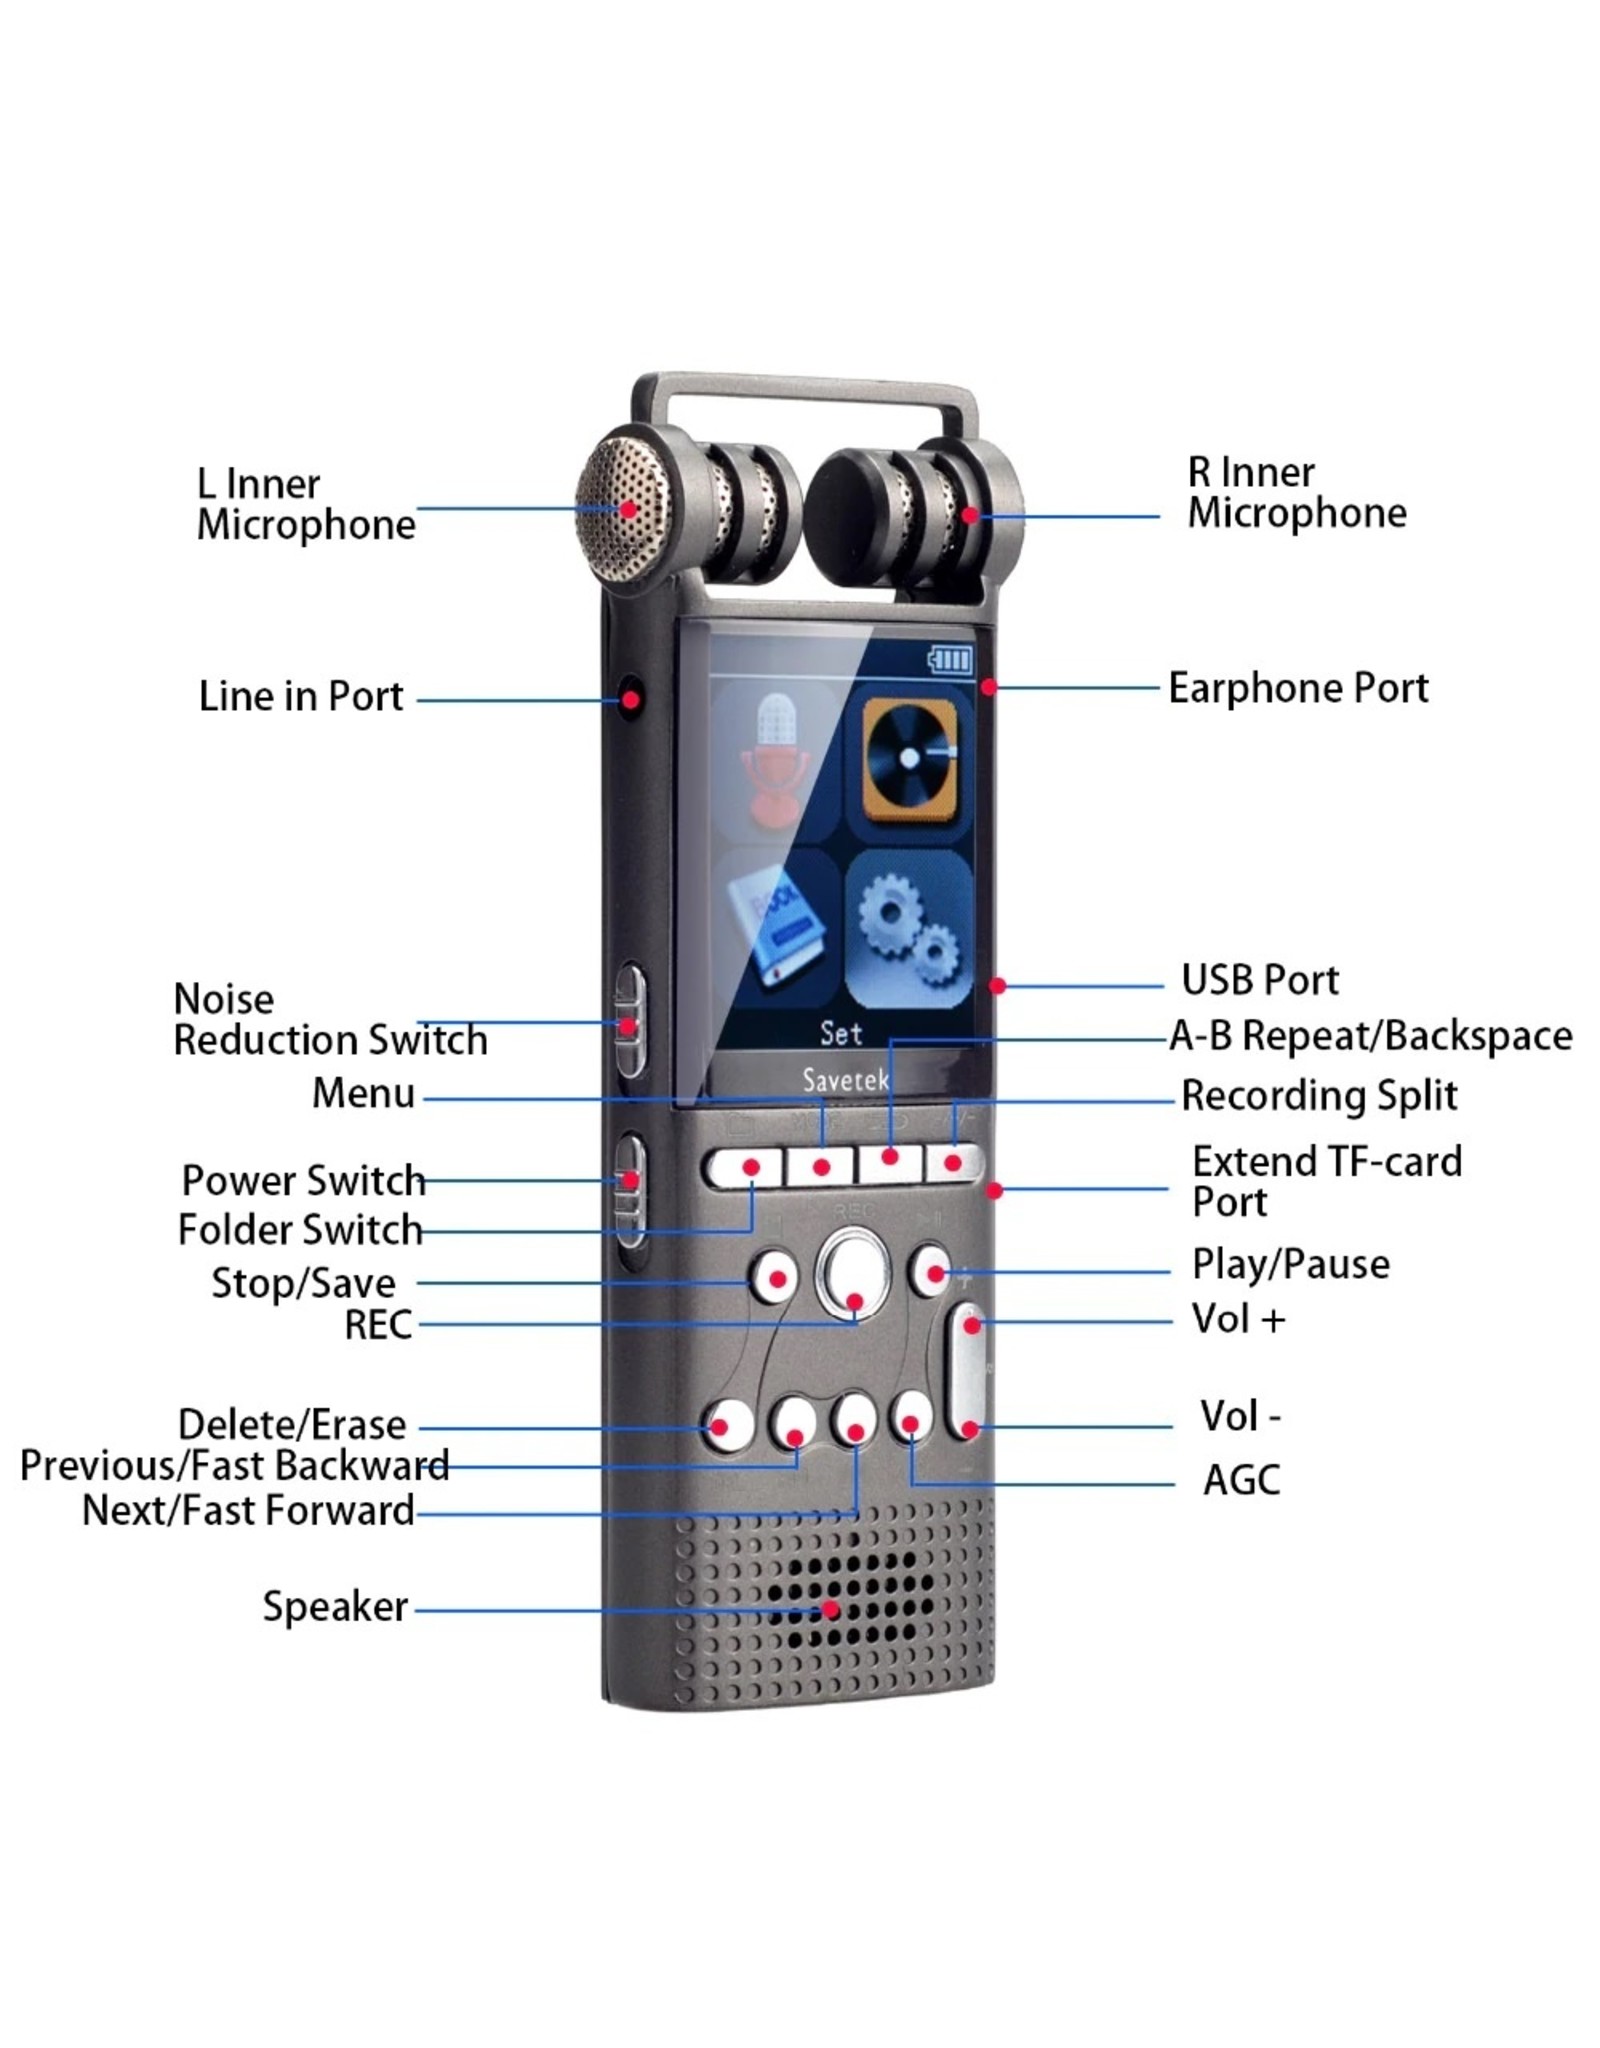 Merkloos Premium Digitale Recorder - Premium Voice Recorder - Multifunctionele Voice Recorder - Dictafoon 8 GB - Audio Memo Recorder Met USB - Spraak Recorder - Sound – Geluid Recorder - Opname Apparaat - Met MP3 Speler Functie – Zwart